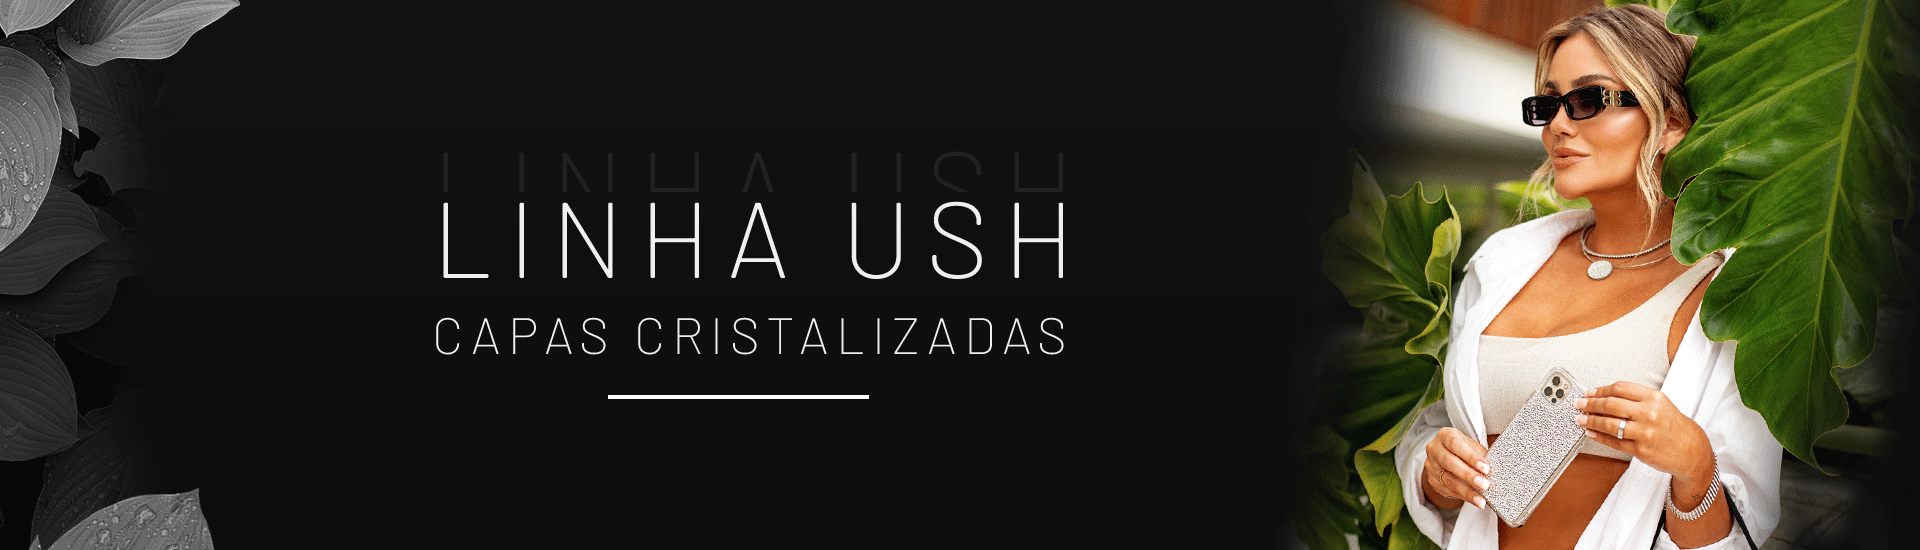 10 Modelo USH Camila | Desktop 1920x550